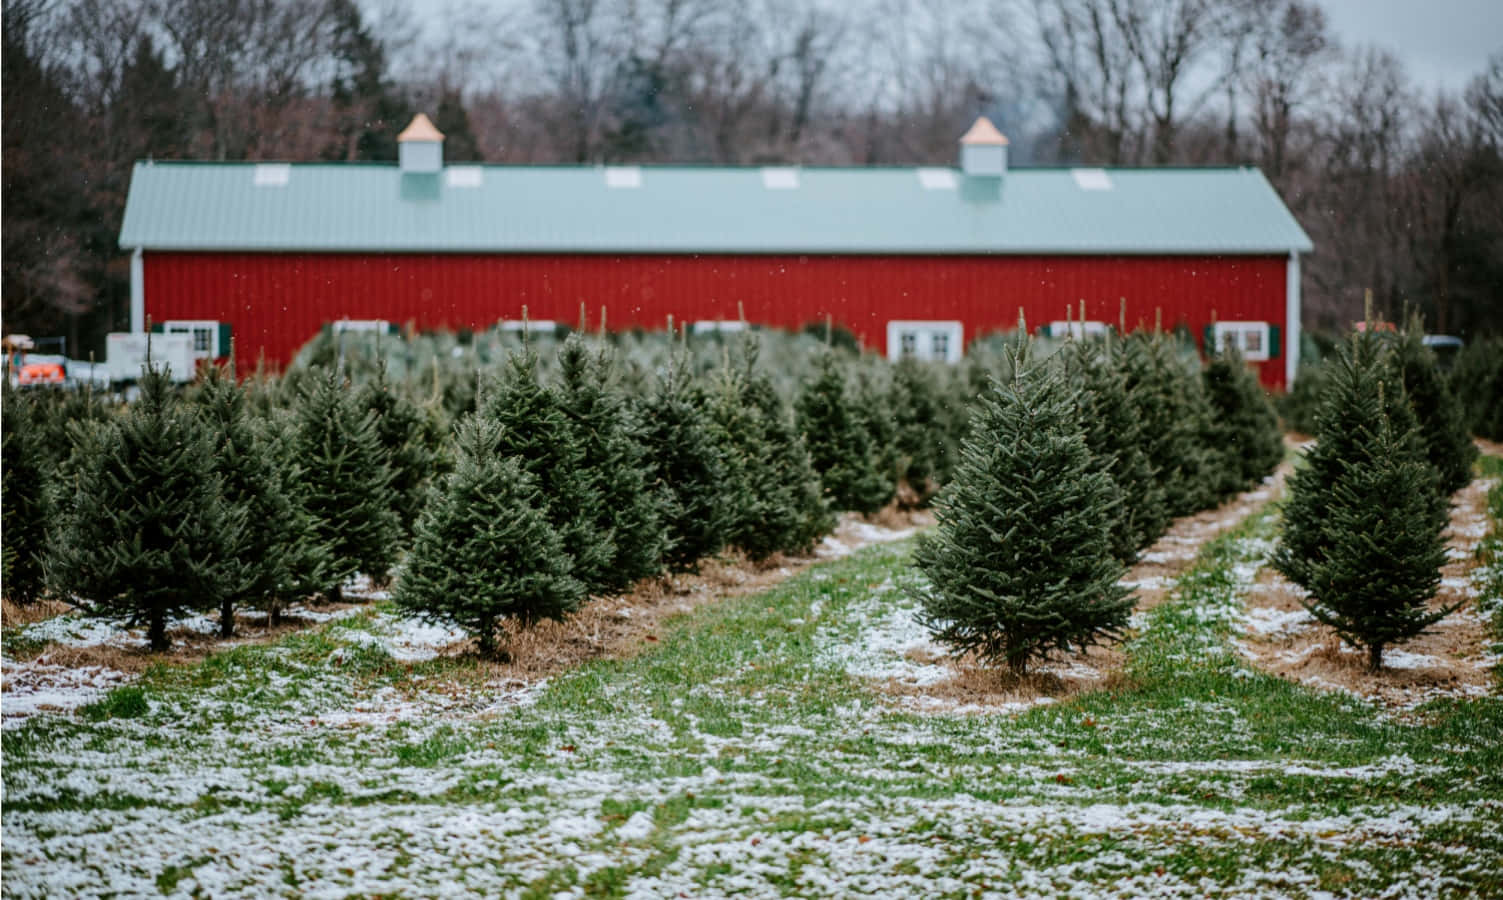 Bred gårdhus i jule træ Plantage billedet beskrive tapetet.